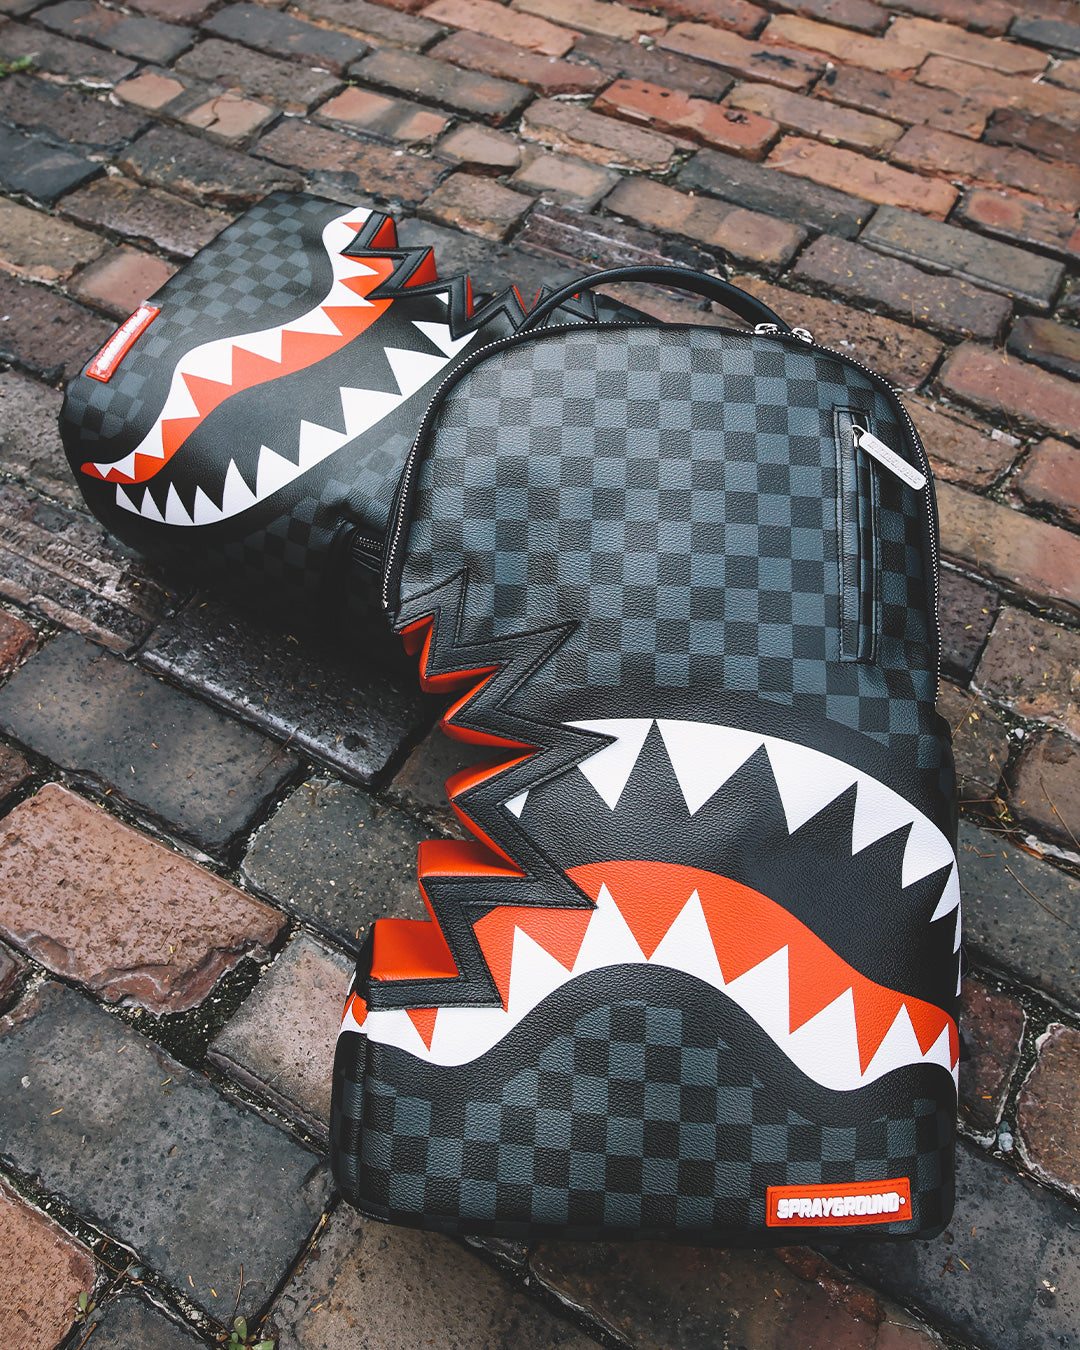 Sharks In Paris backpack, Sprayground